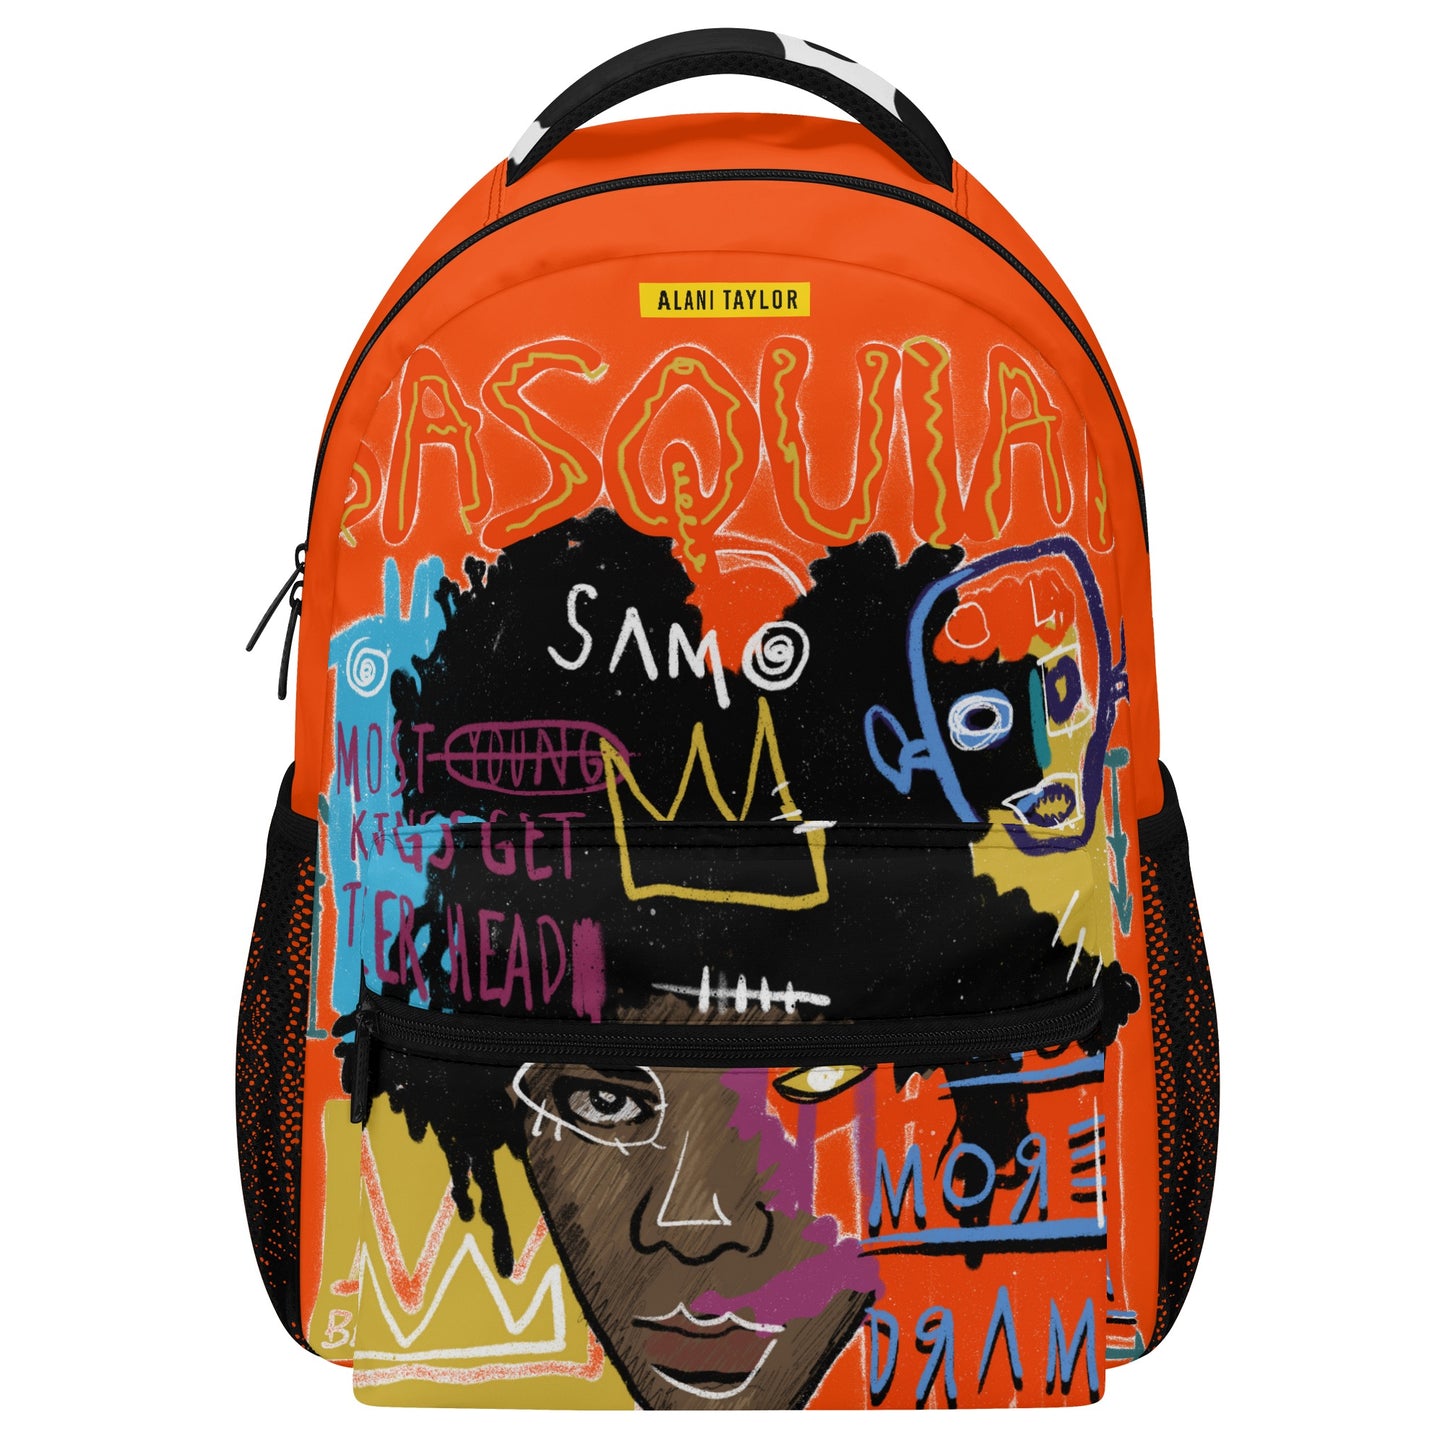 The B Art Backpack